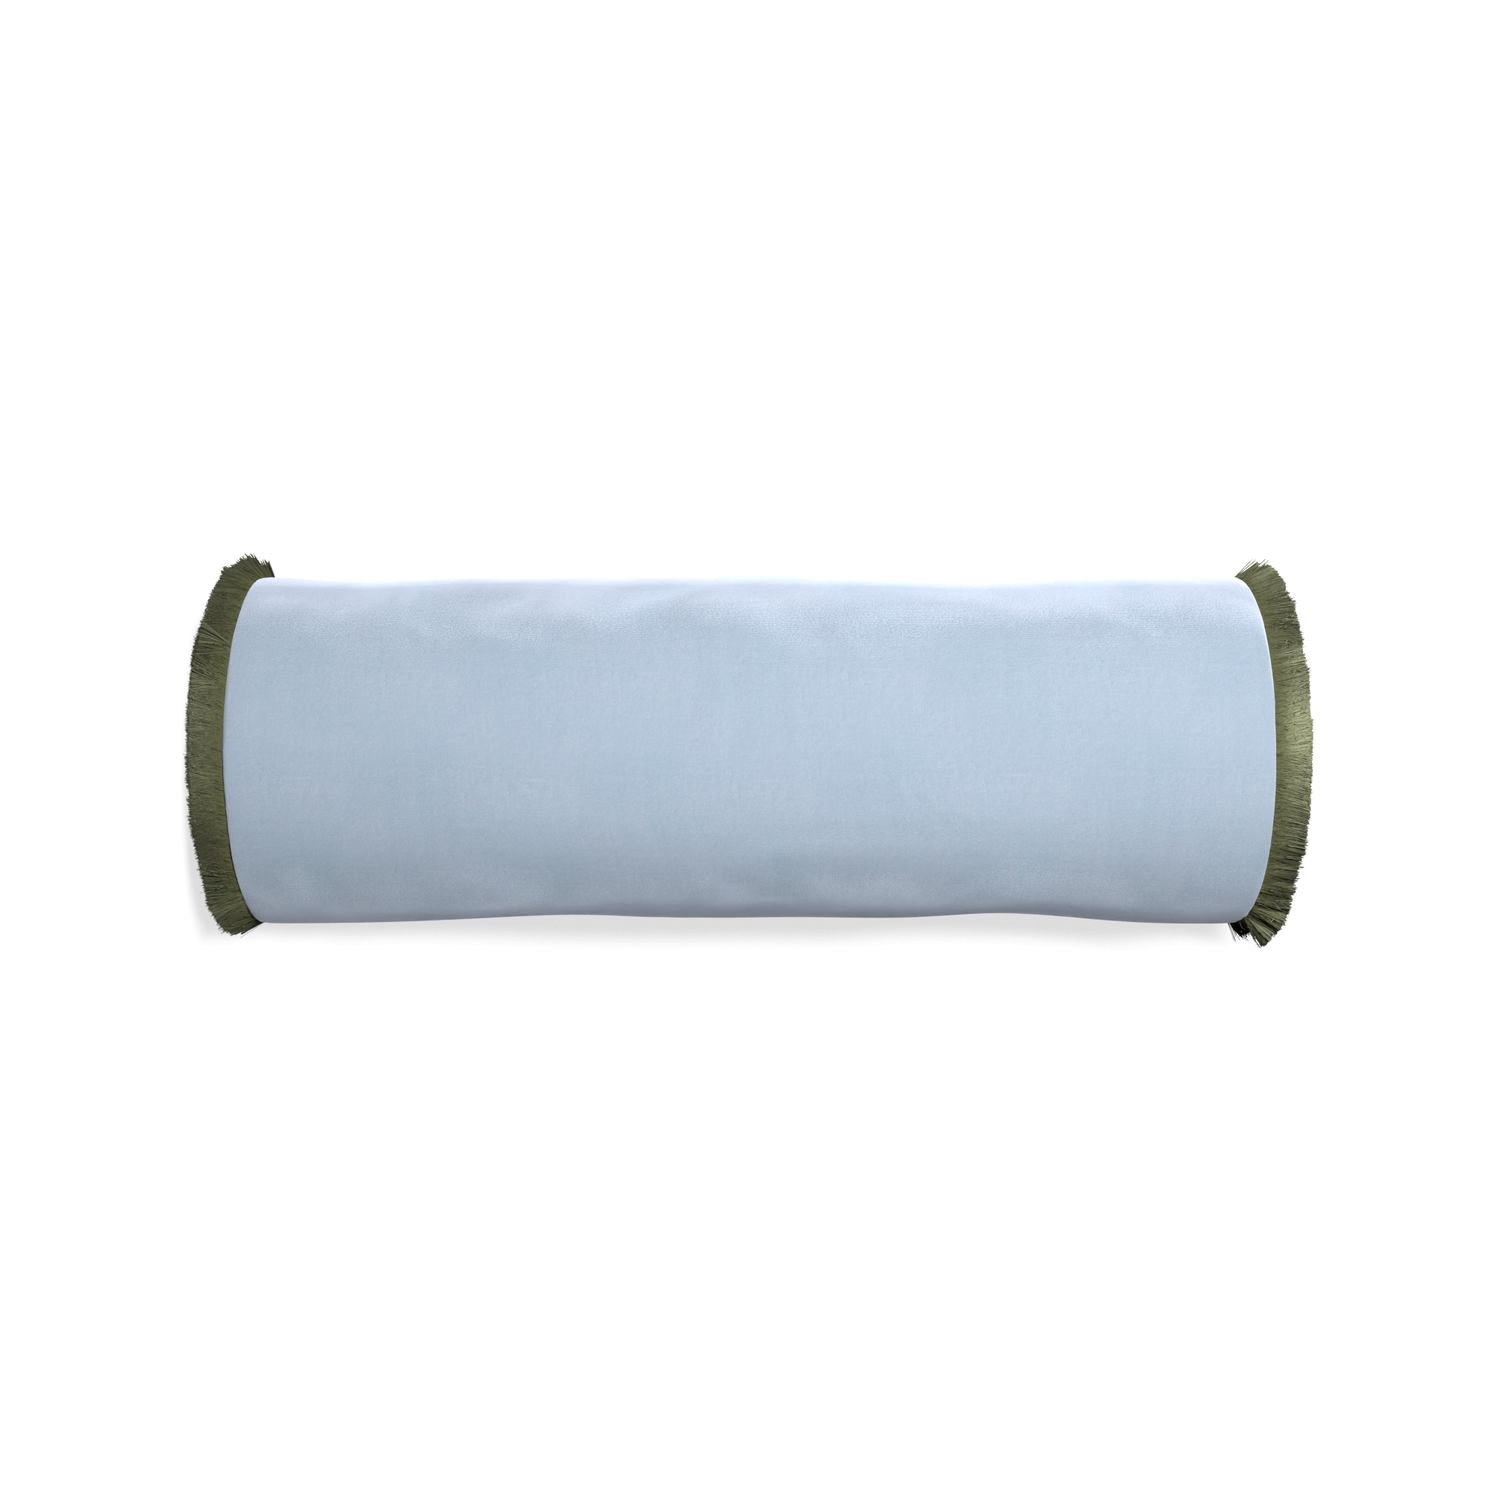 bolster light blue velvet pillow with sage green fringe